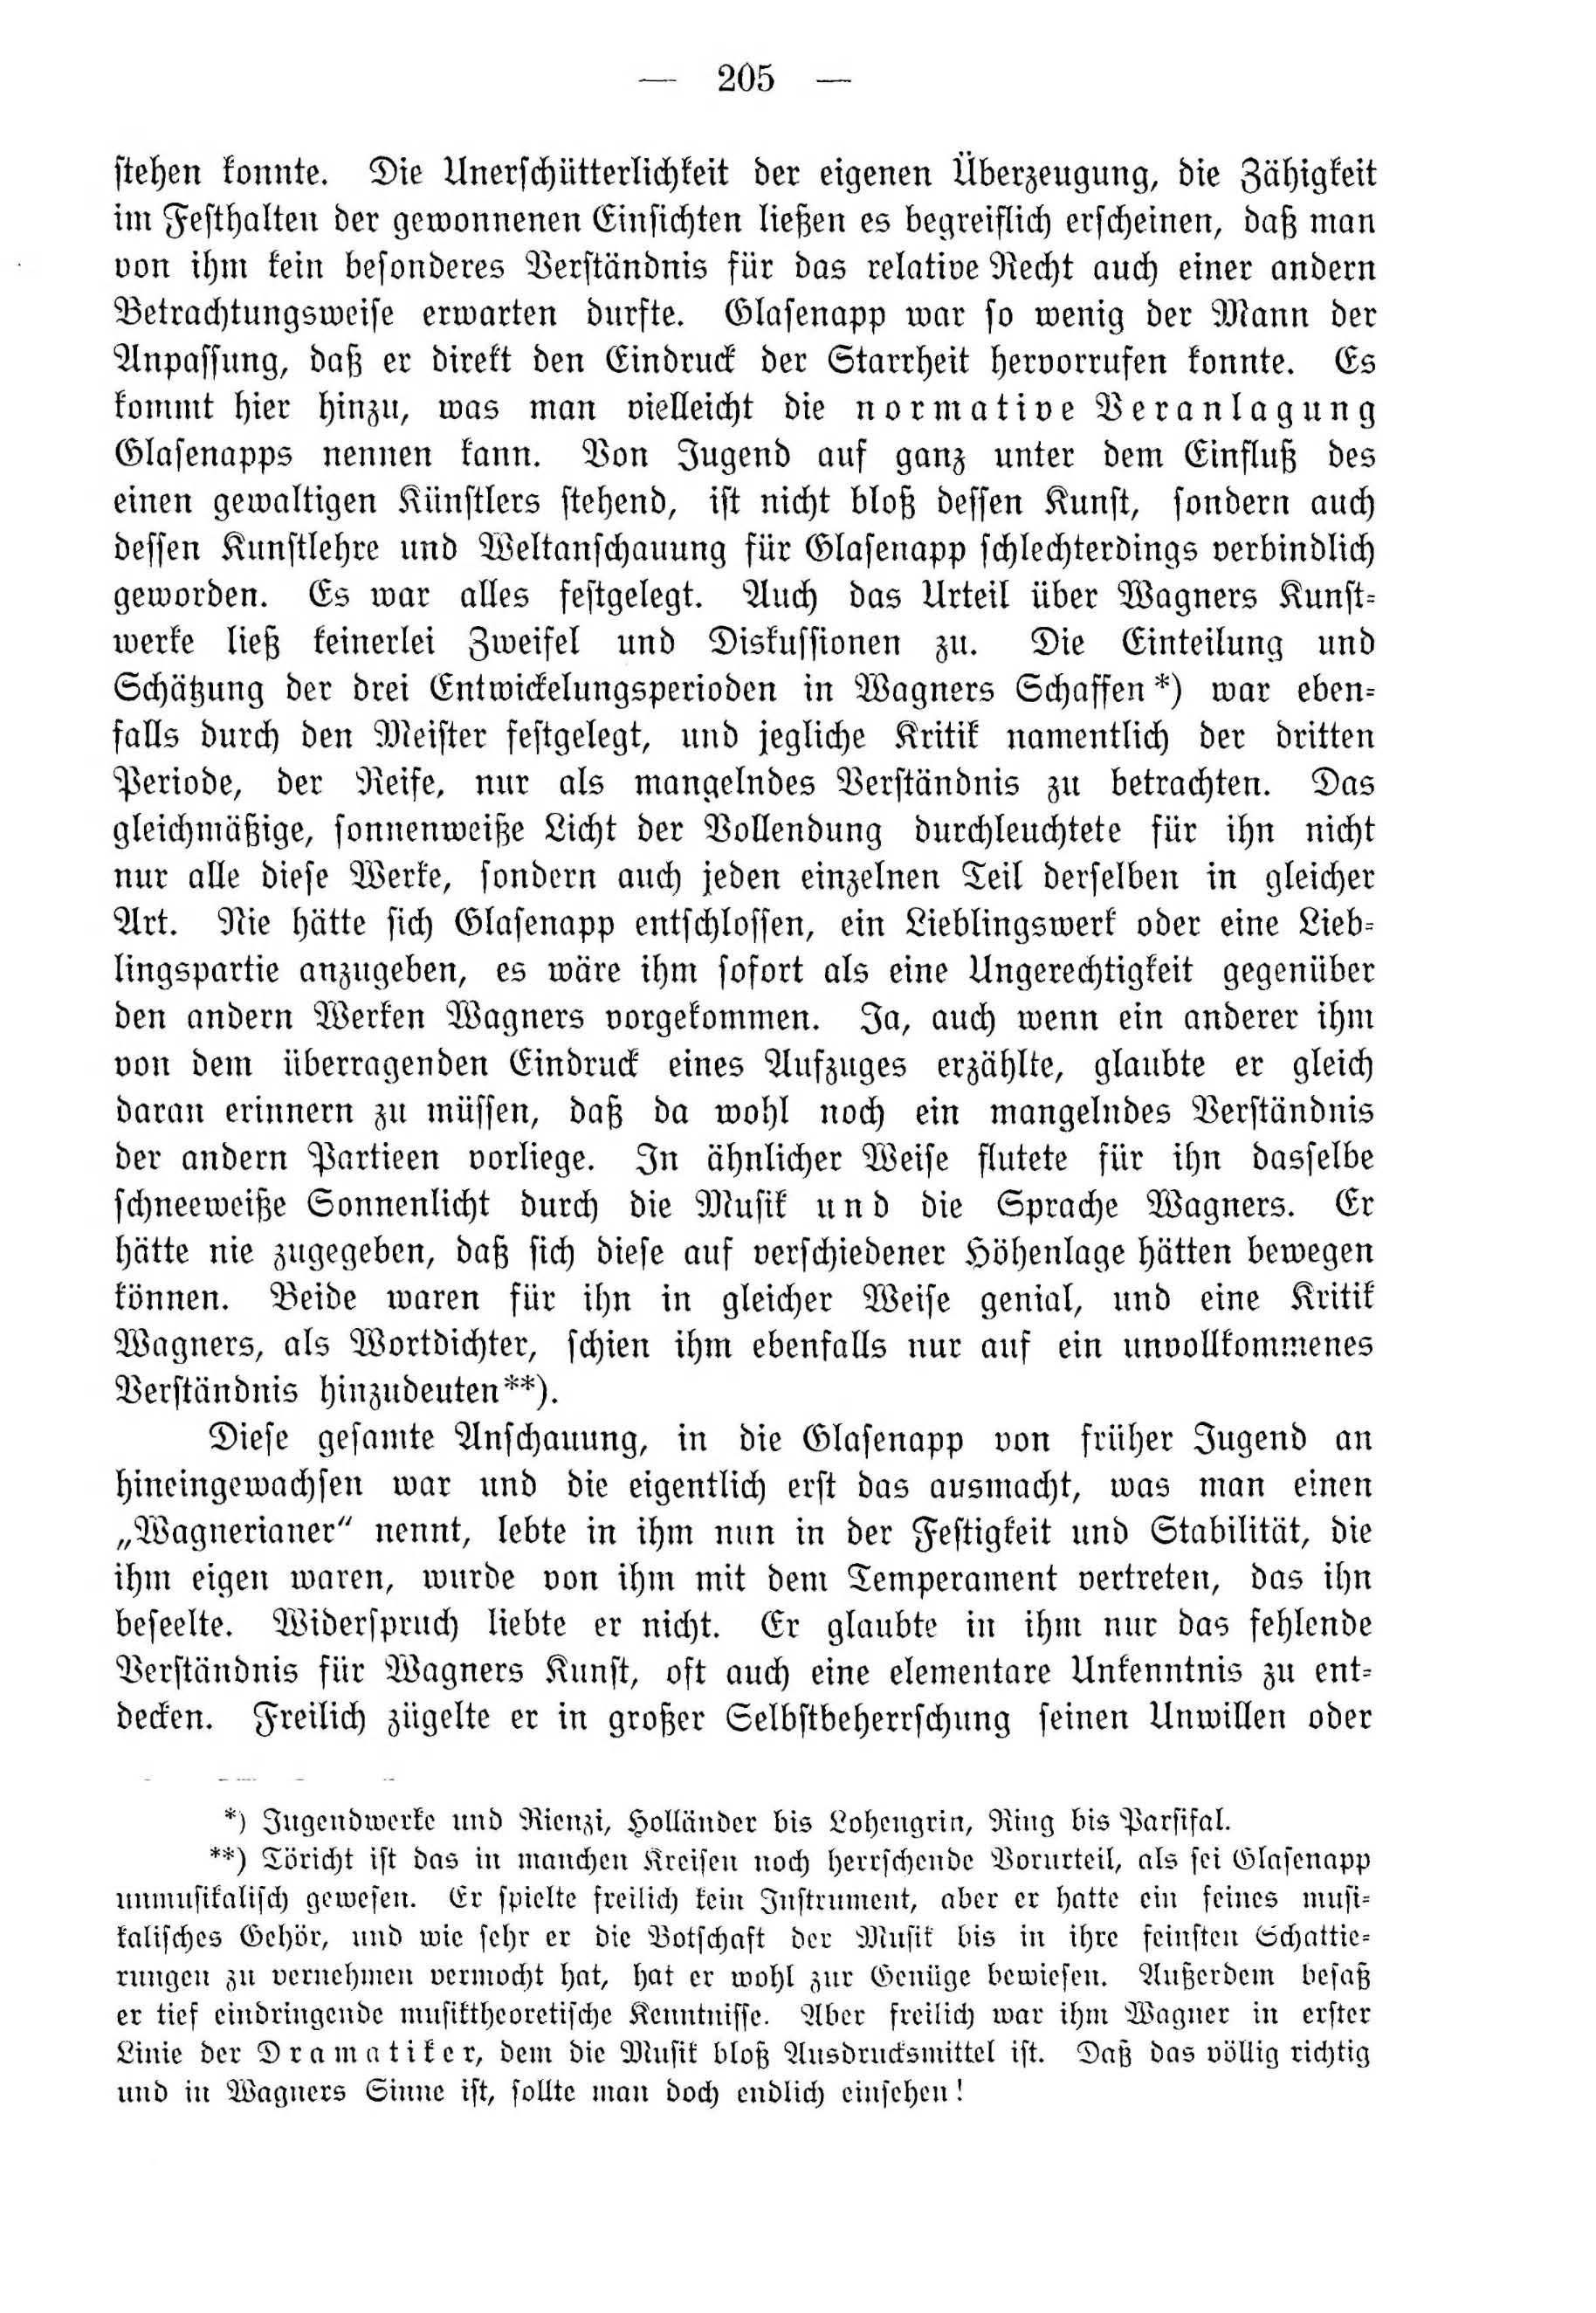 Deutsche Monatsschrift für Russland [4] (1915) | 205. (205) Main body of text